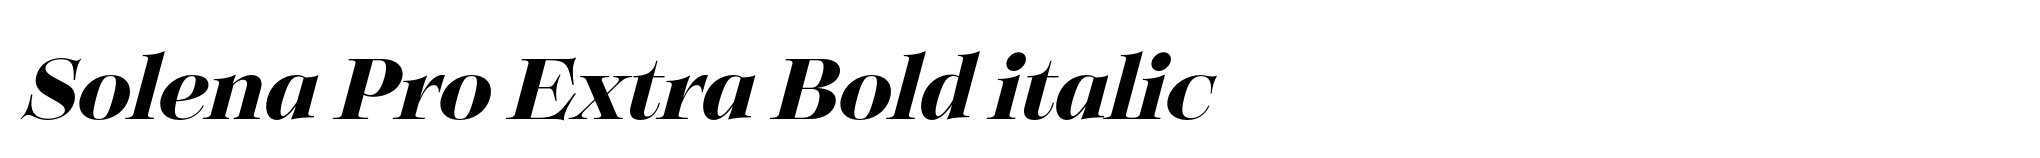 Solena Pro Extra Bold italic image